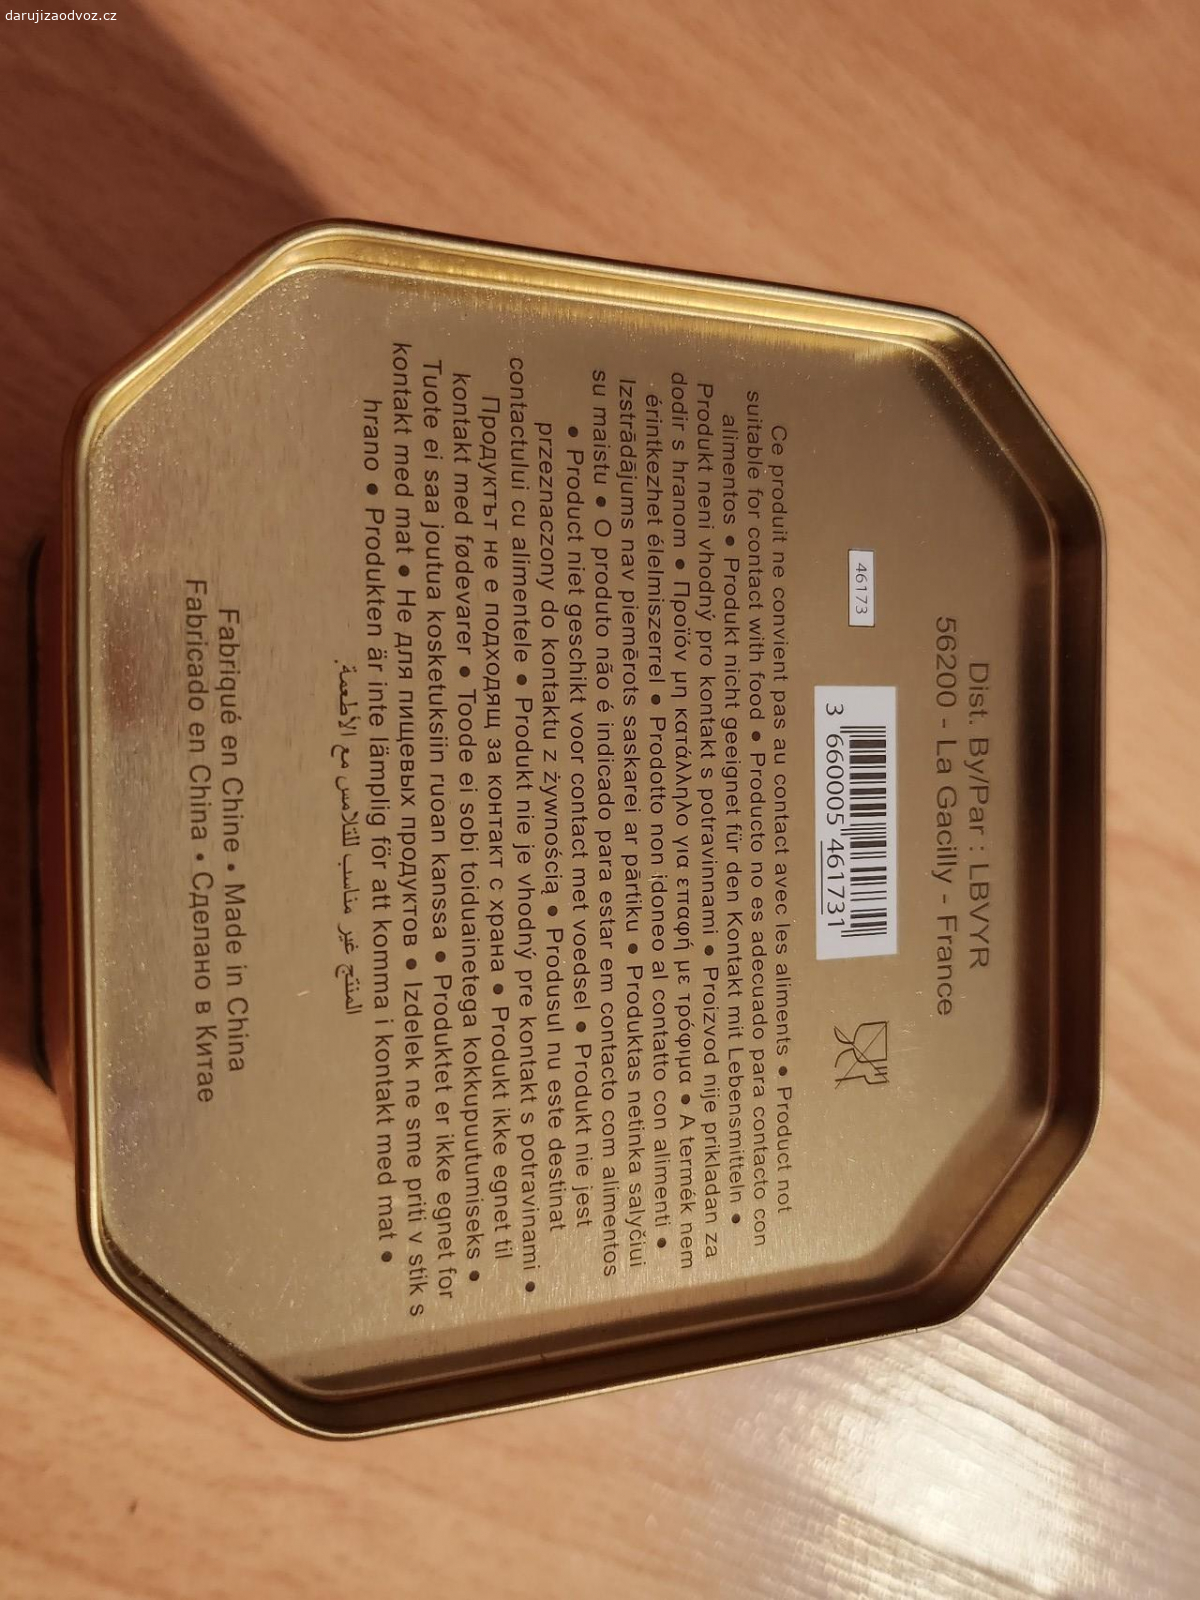 Plechová krabička. Kovová krabička od kosmetiky Yves Rocher - není vhodná na jídlo, velikost asi 10x10cm. Za odvoz.